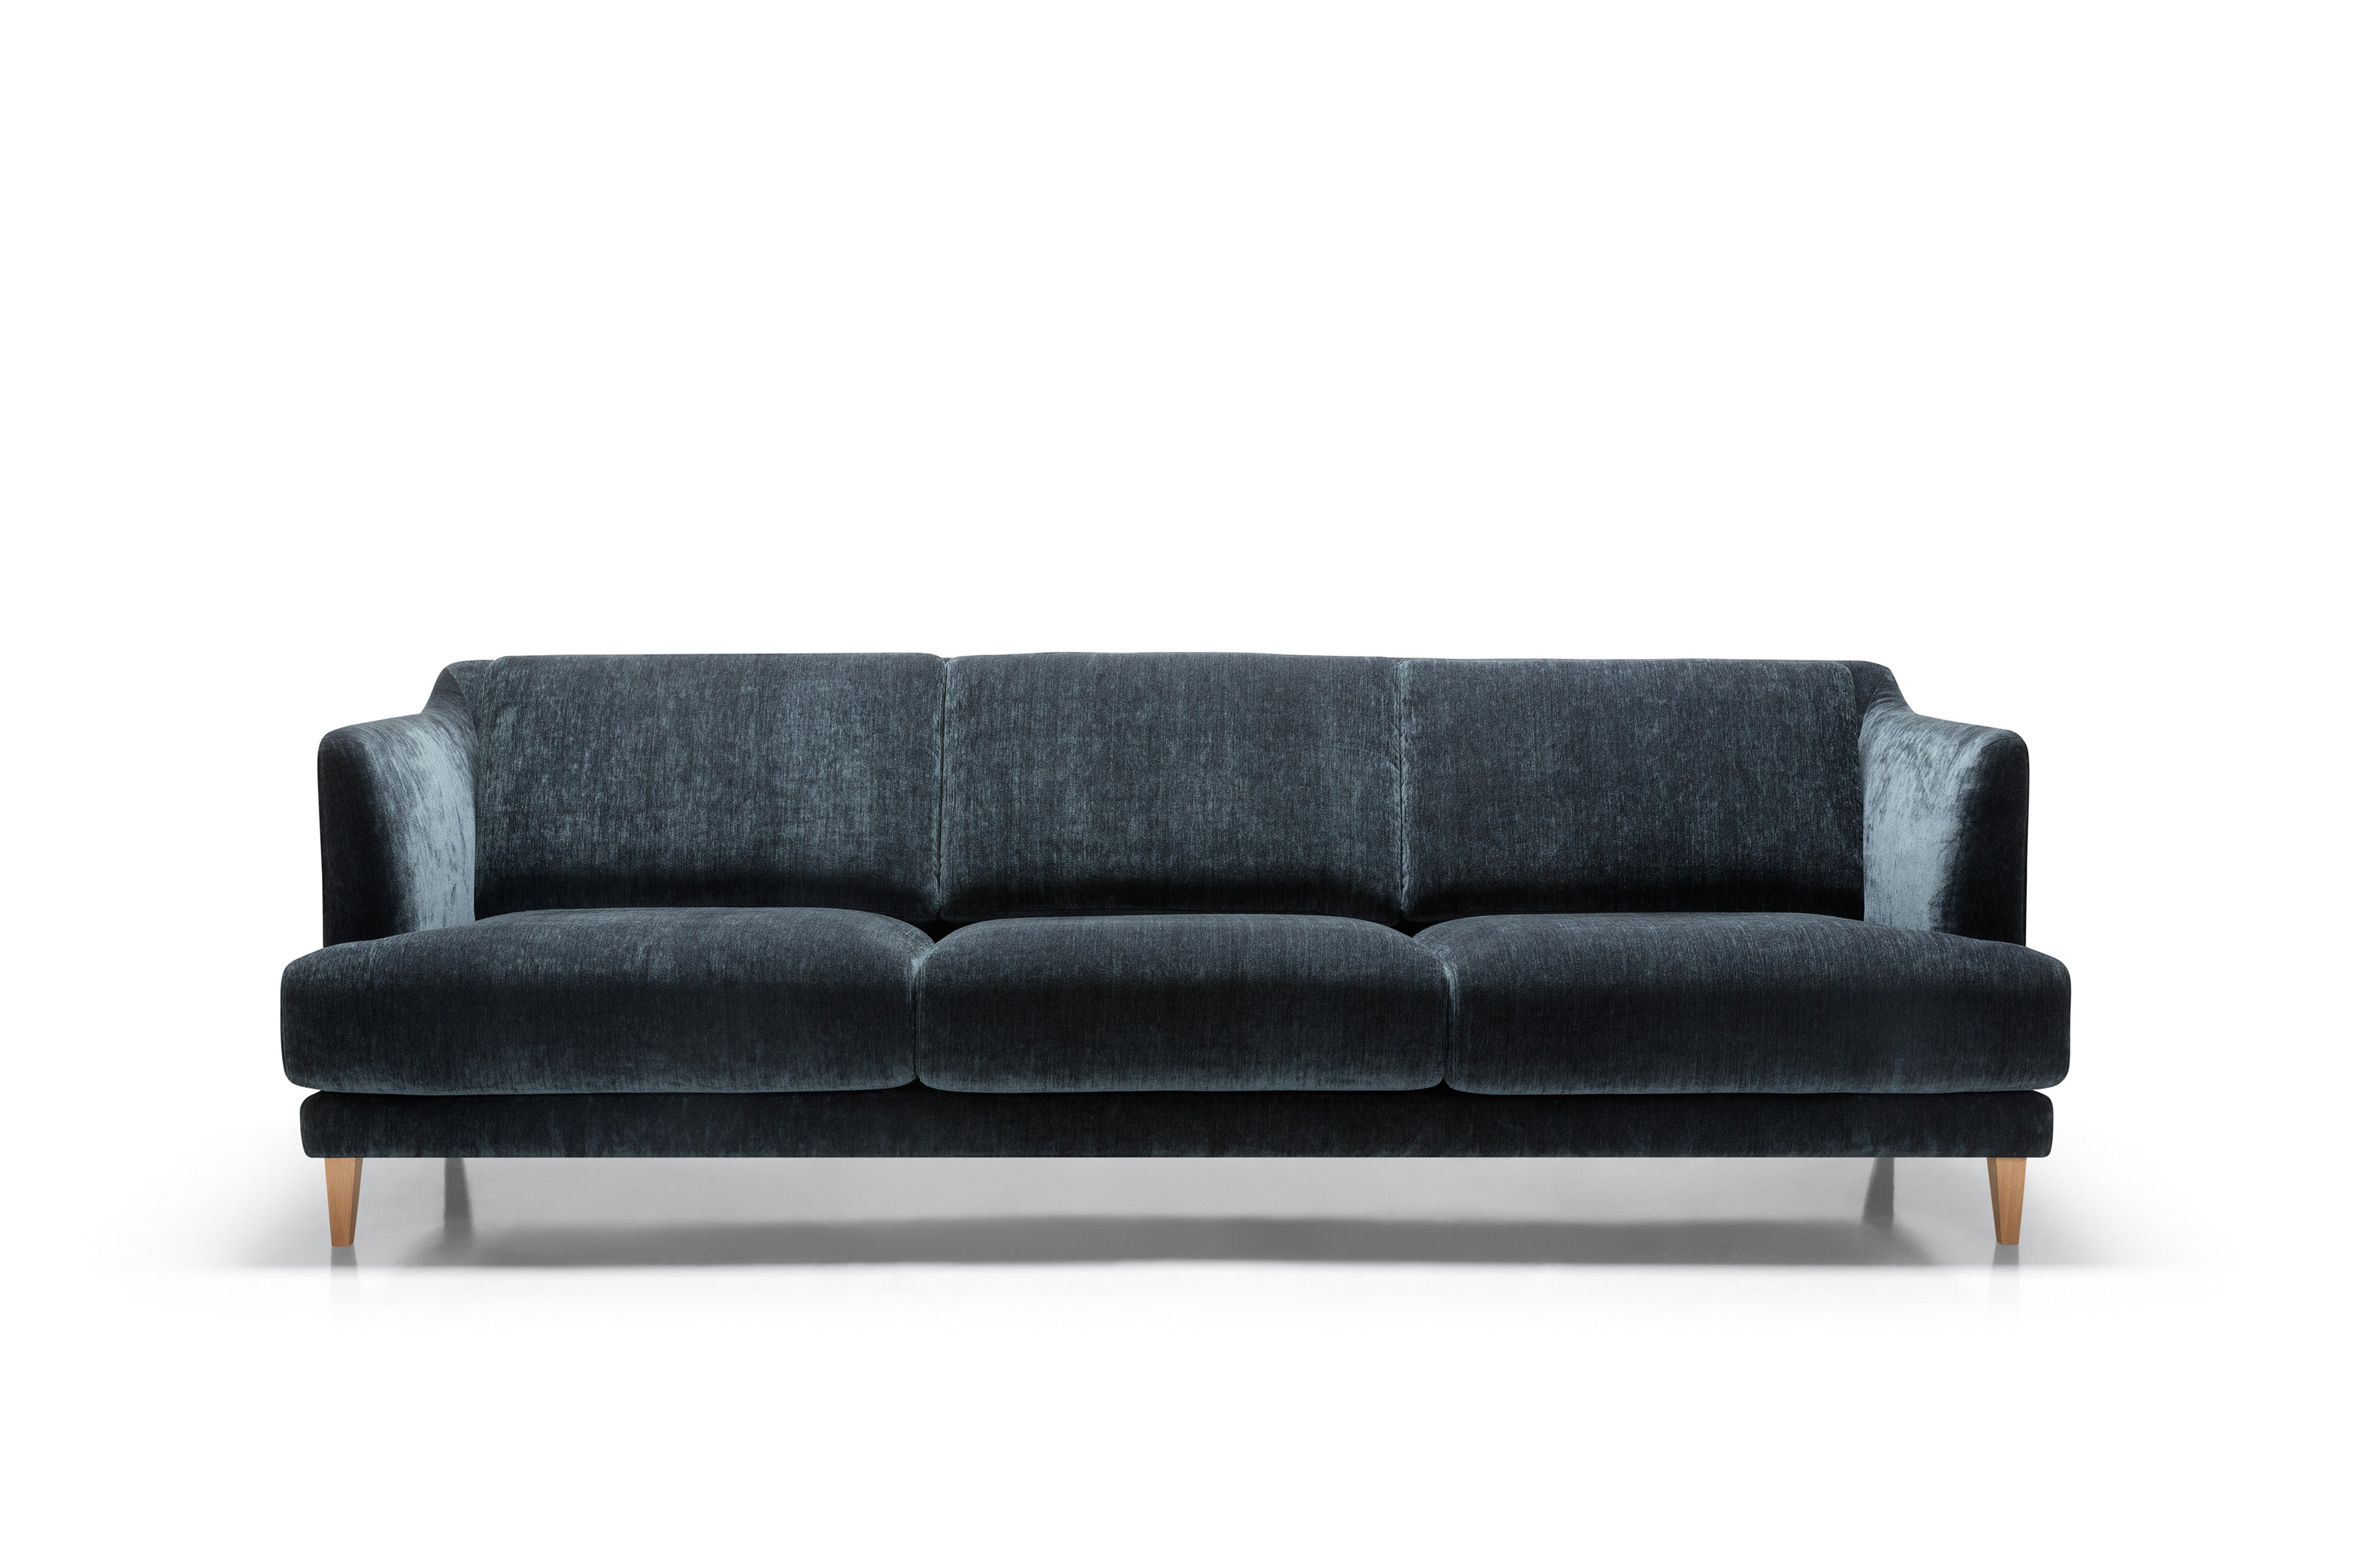 Mastrella Verdi 3 XL Seater Sofa (Three Cushions)